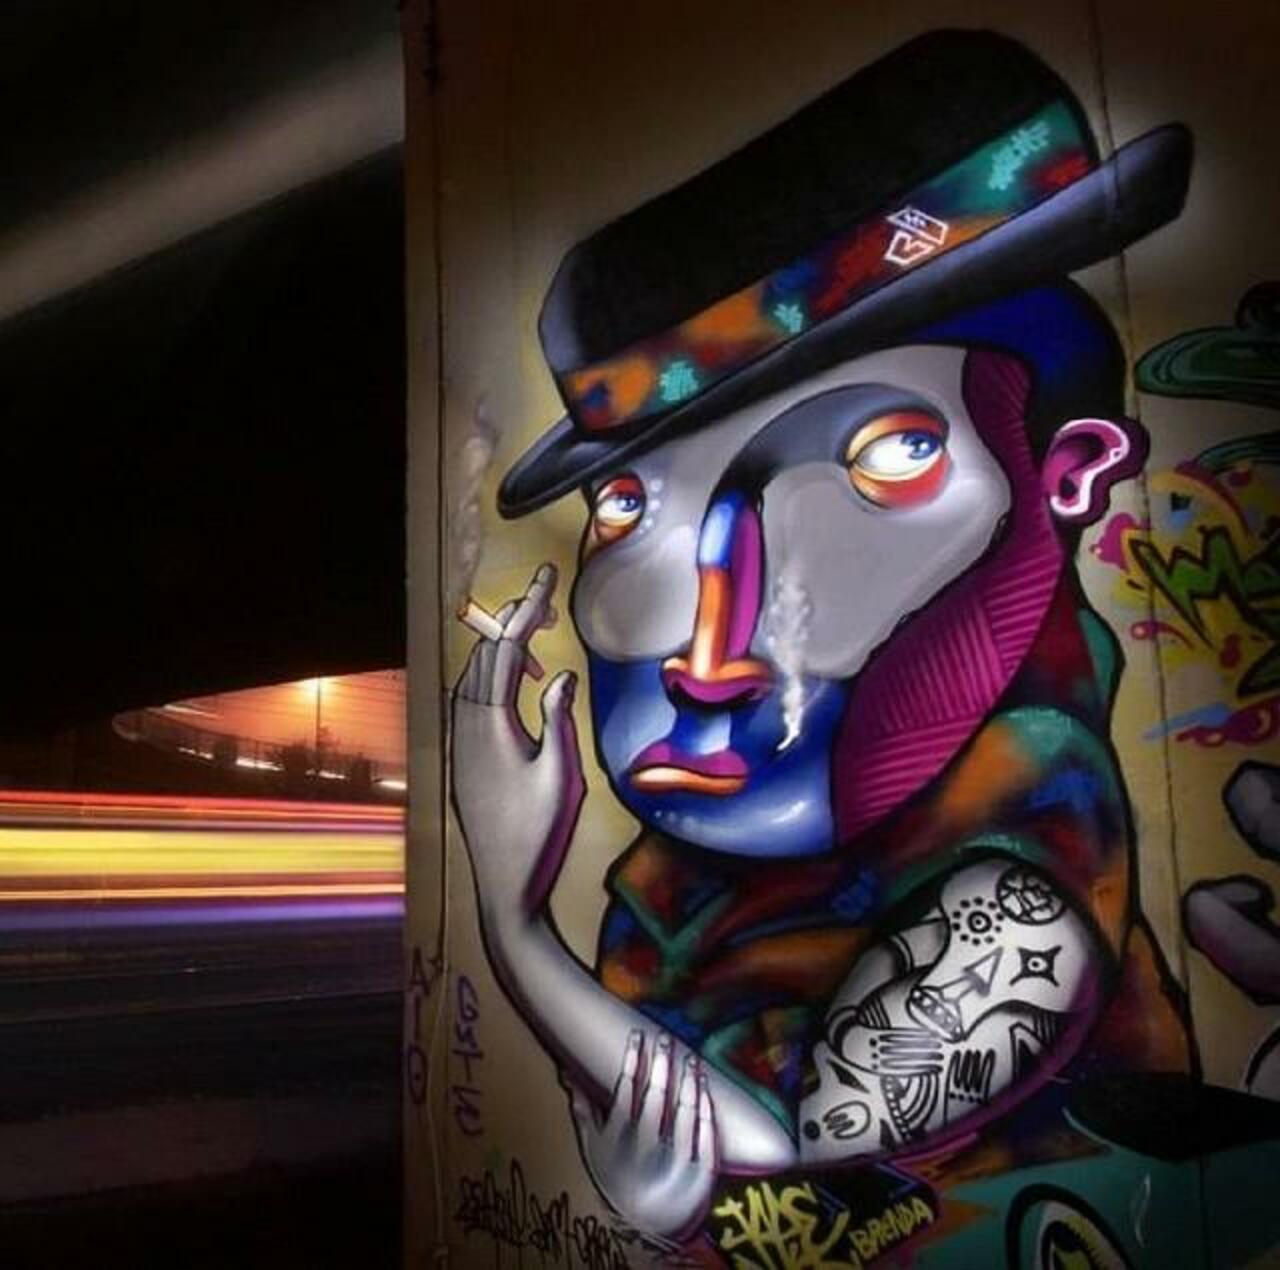 “@GoogleStreetArt: Abstract Street Art by Jade Rivera 
#art #mural #graffiti #streetart http://t.co/Xbt006Op8a”